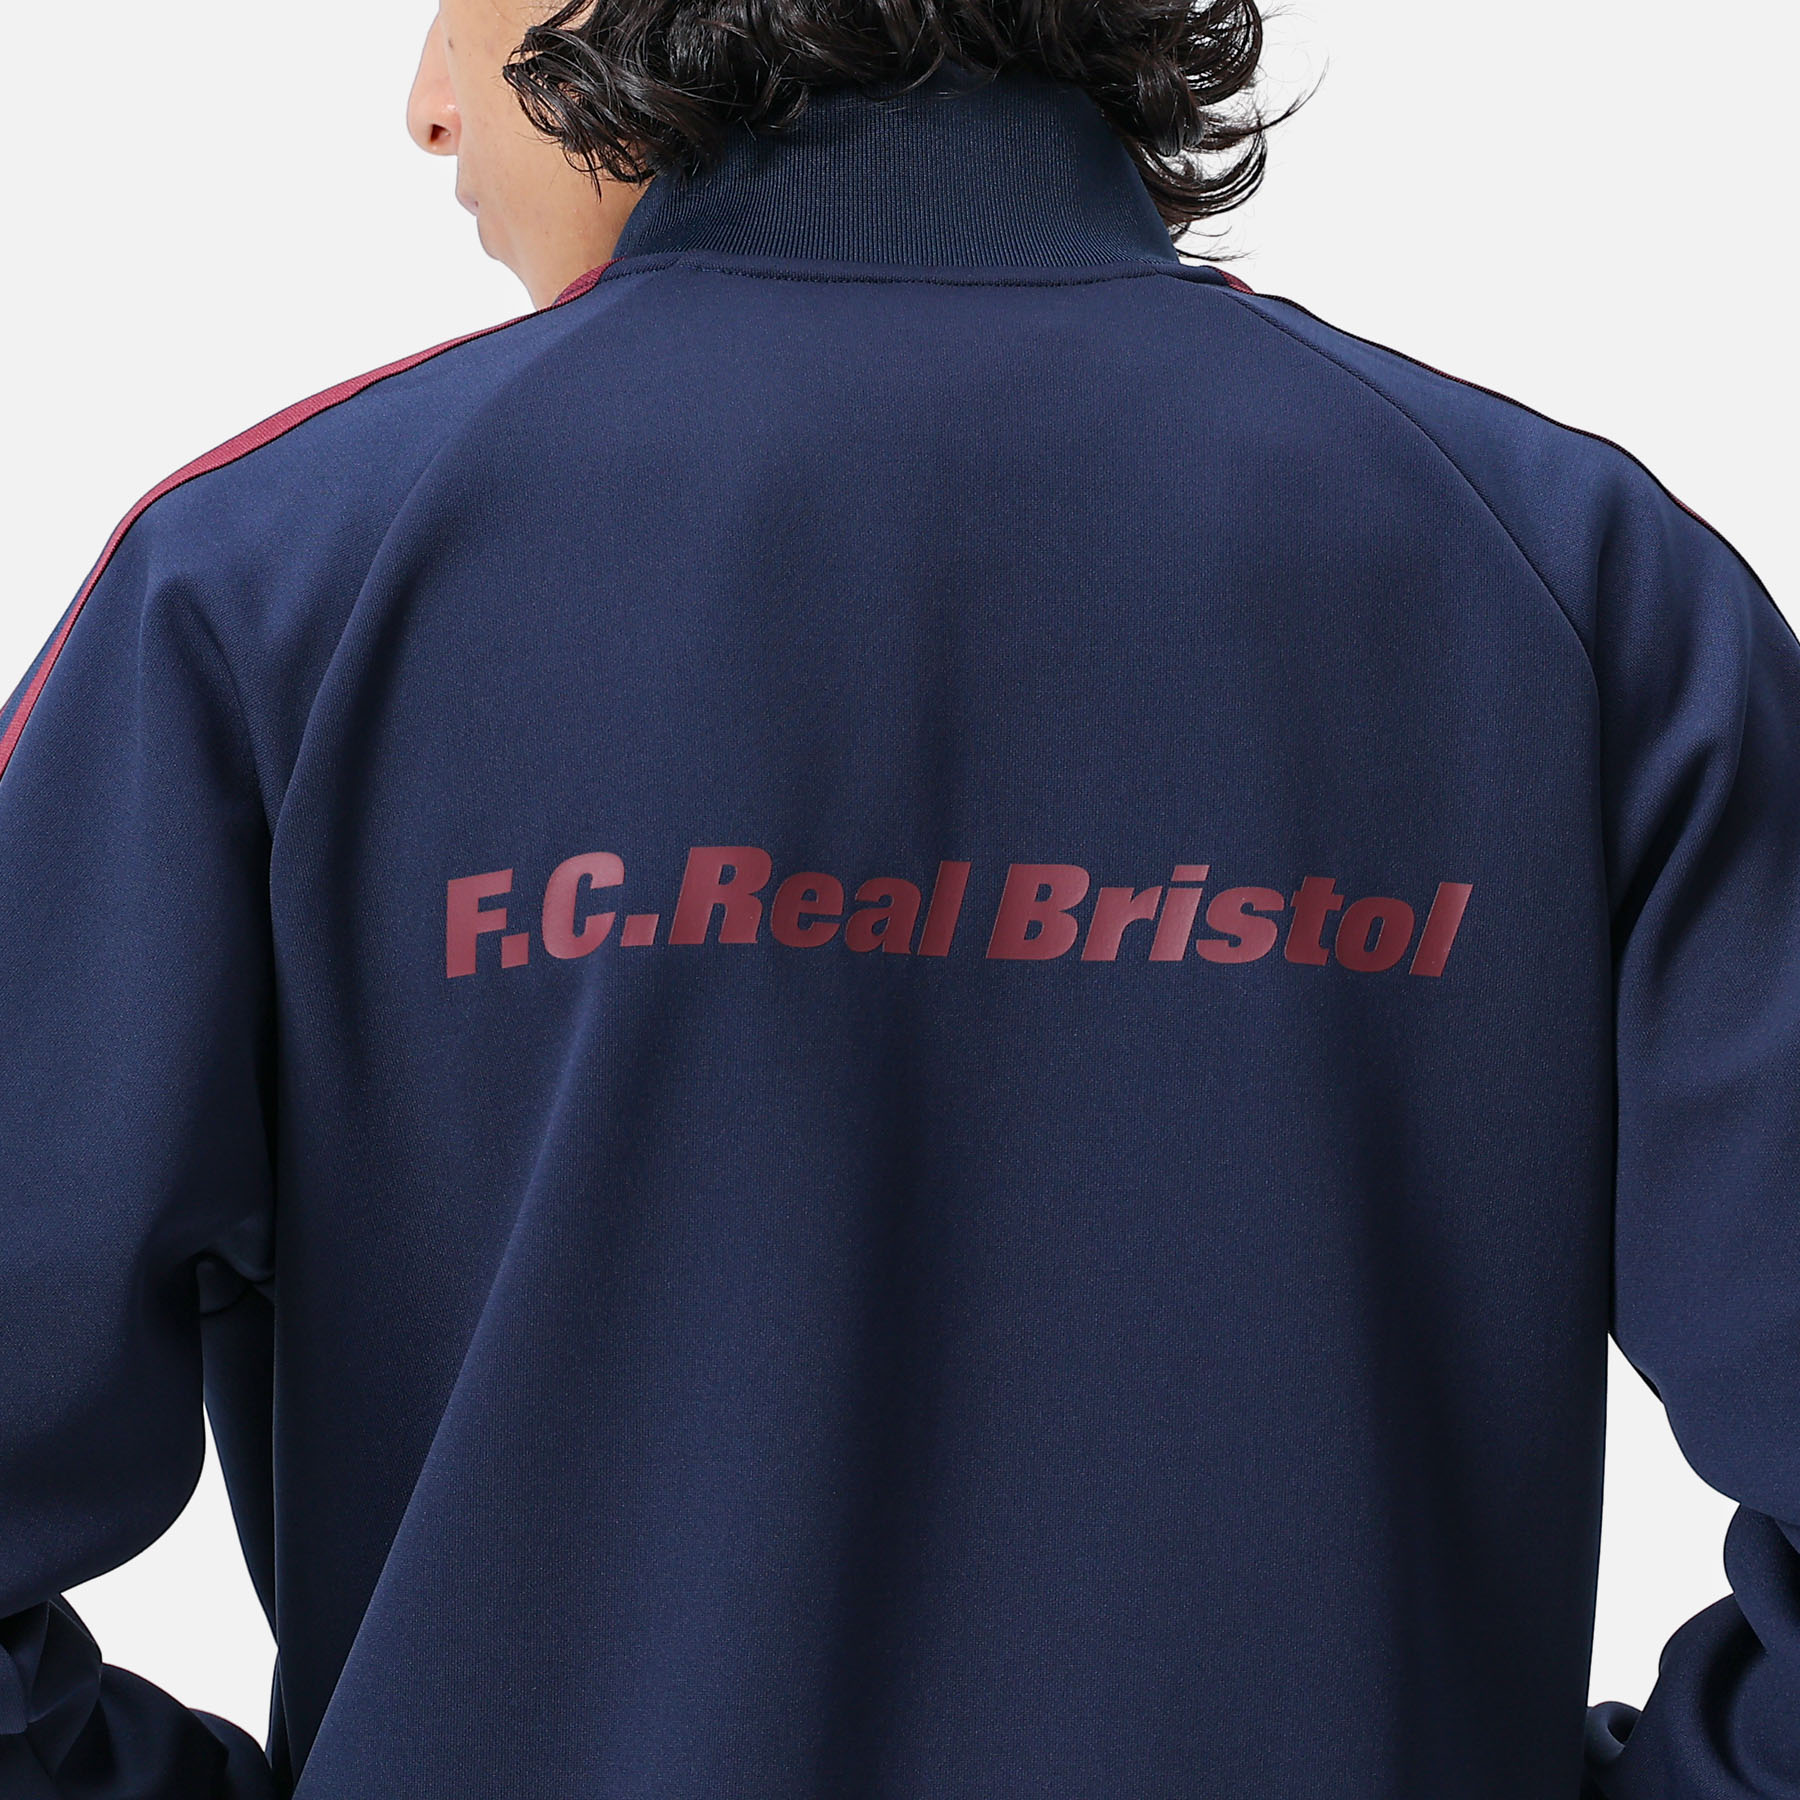 満点の FC.Real Bristol TRAINING TRACK JACKET ecousarecycling.com